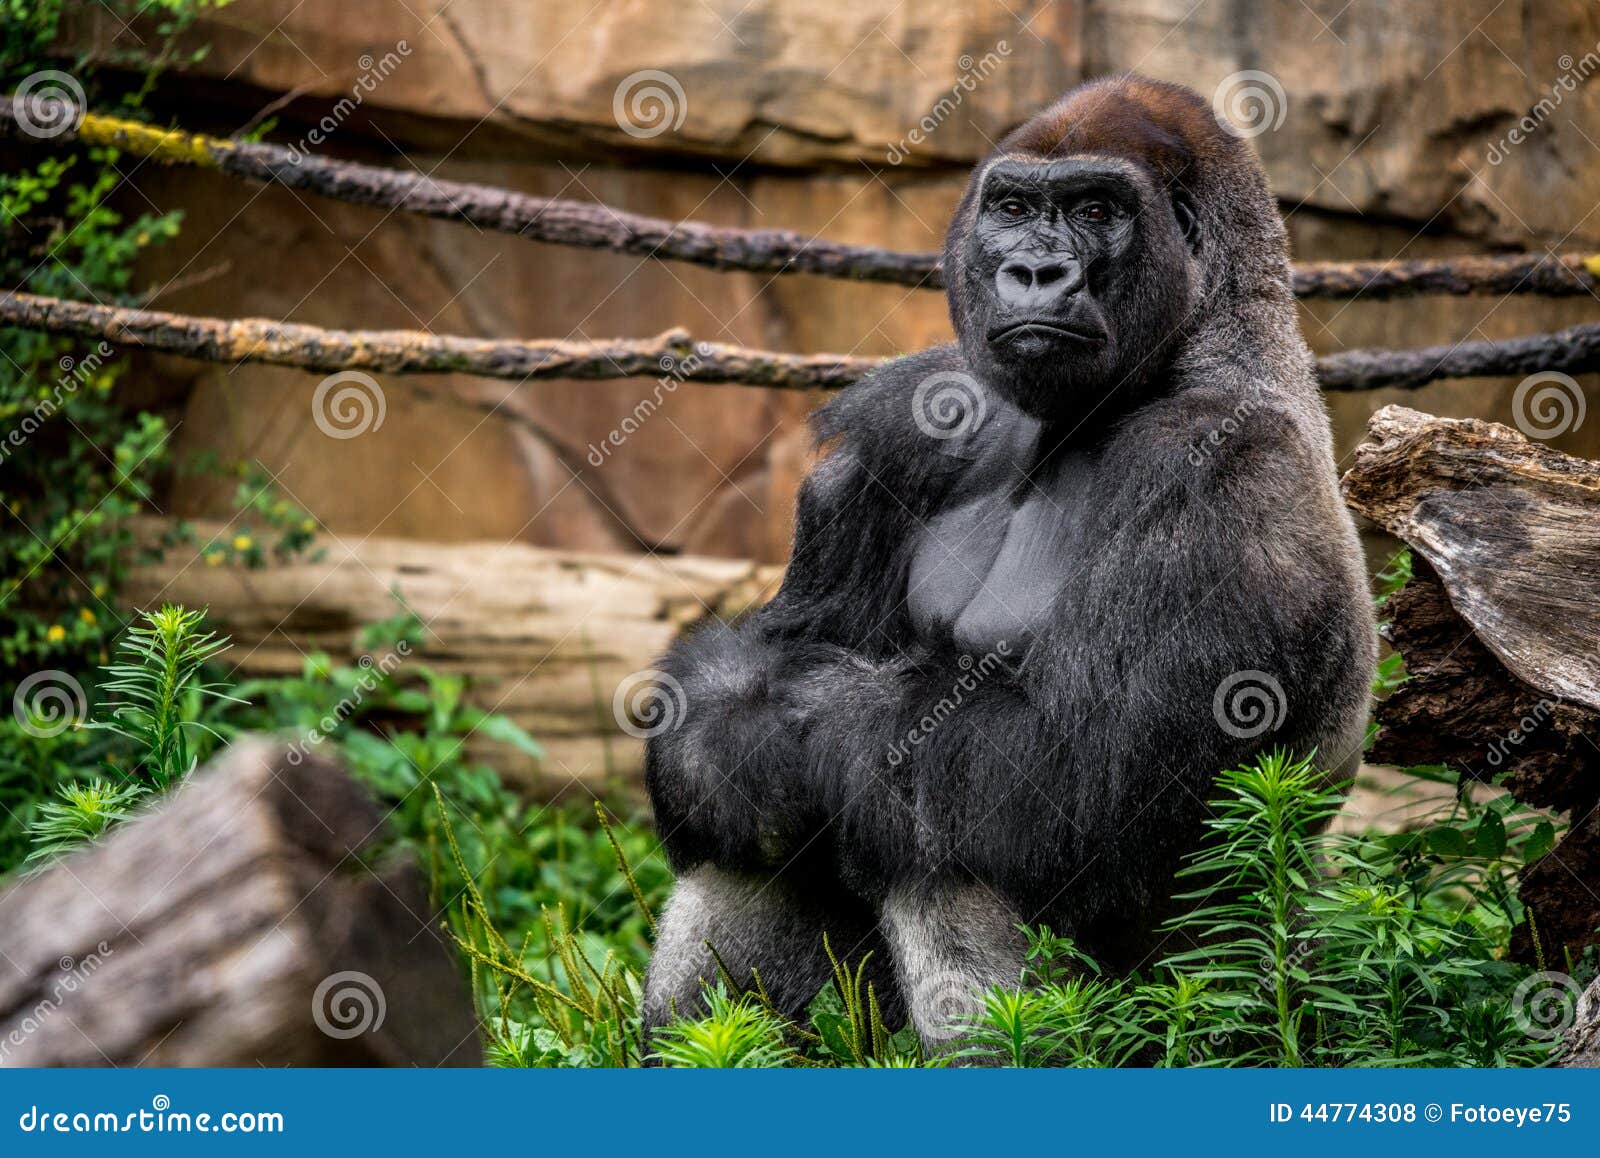 gorilla primate close-up in natural habitat